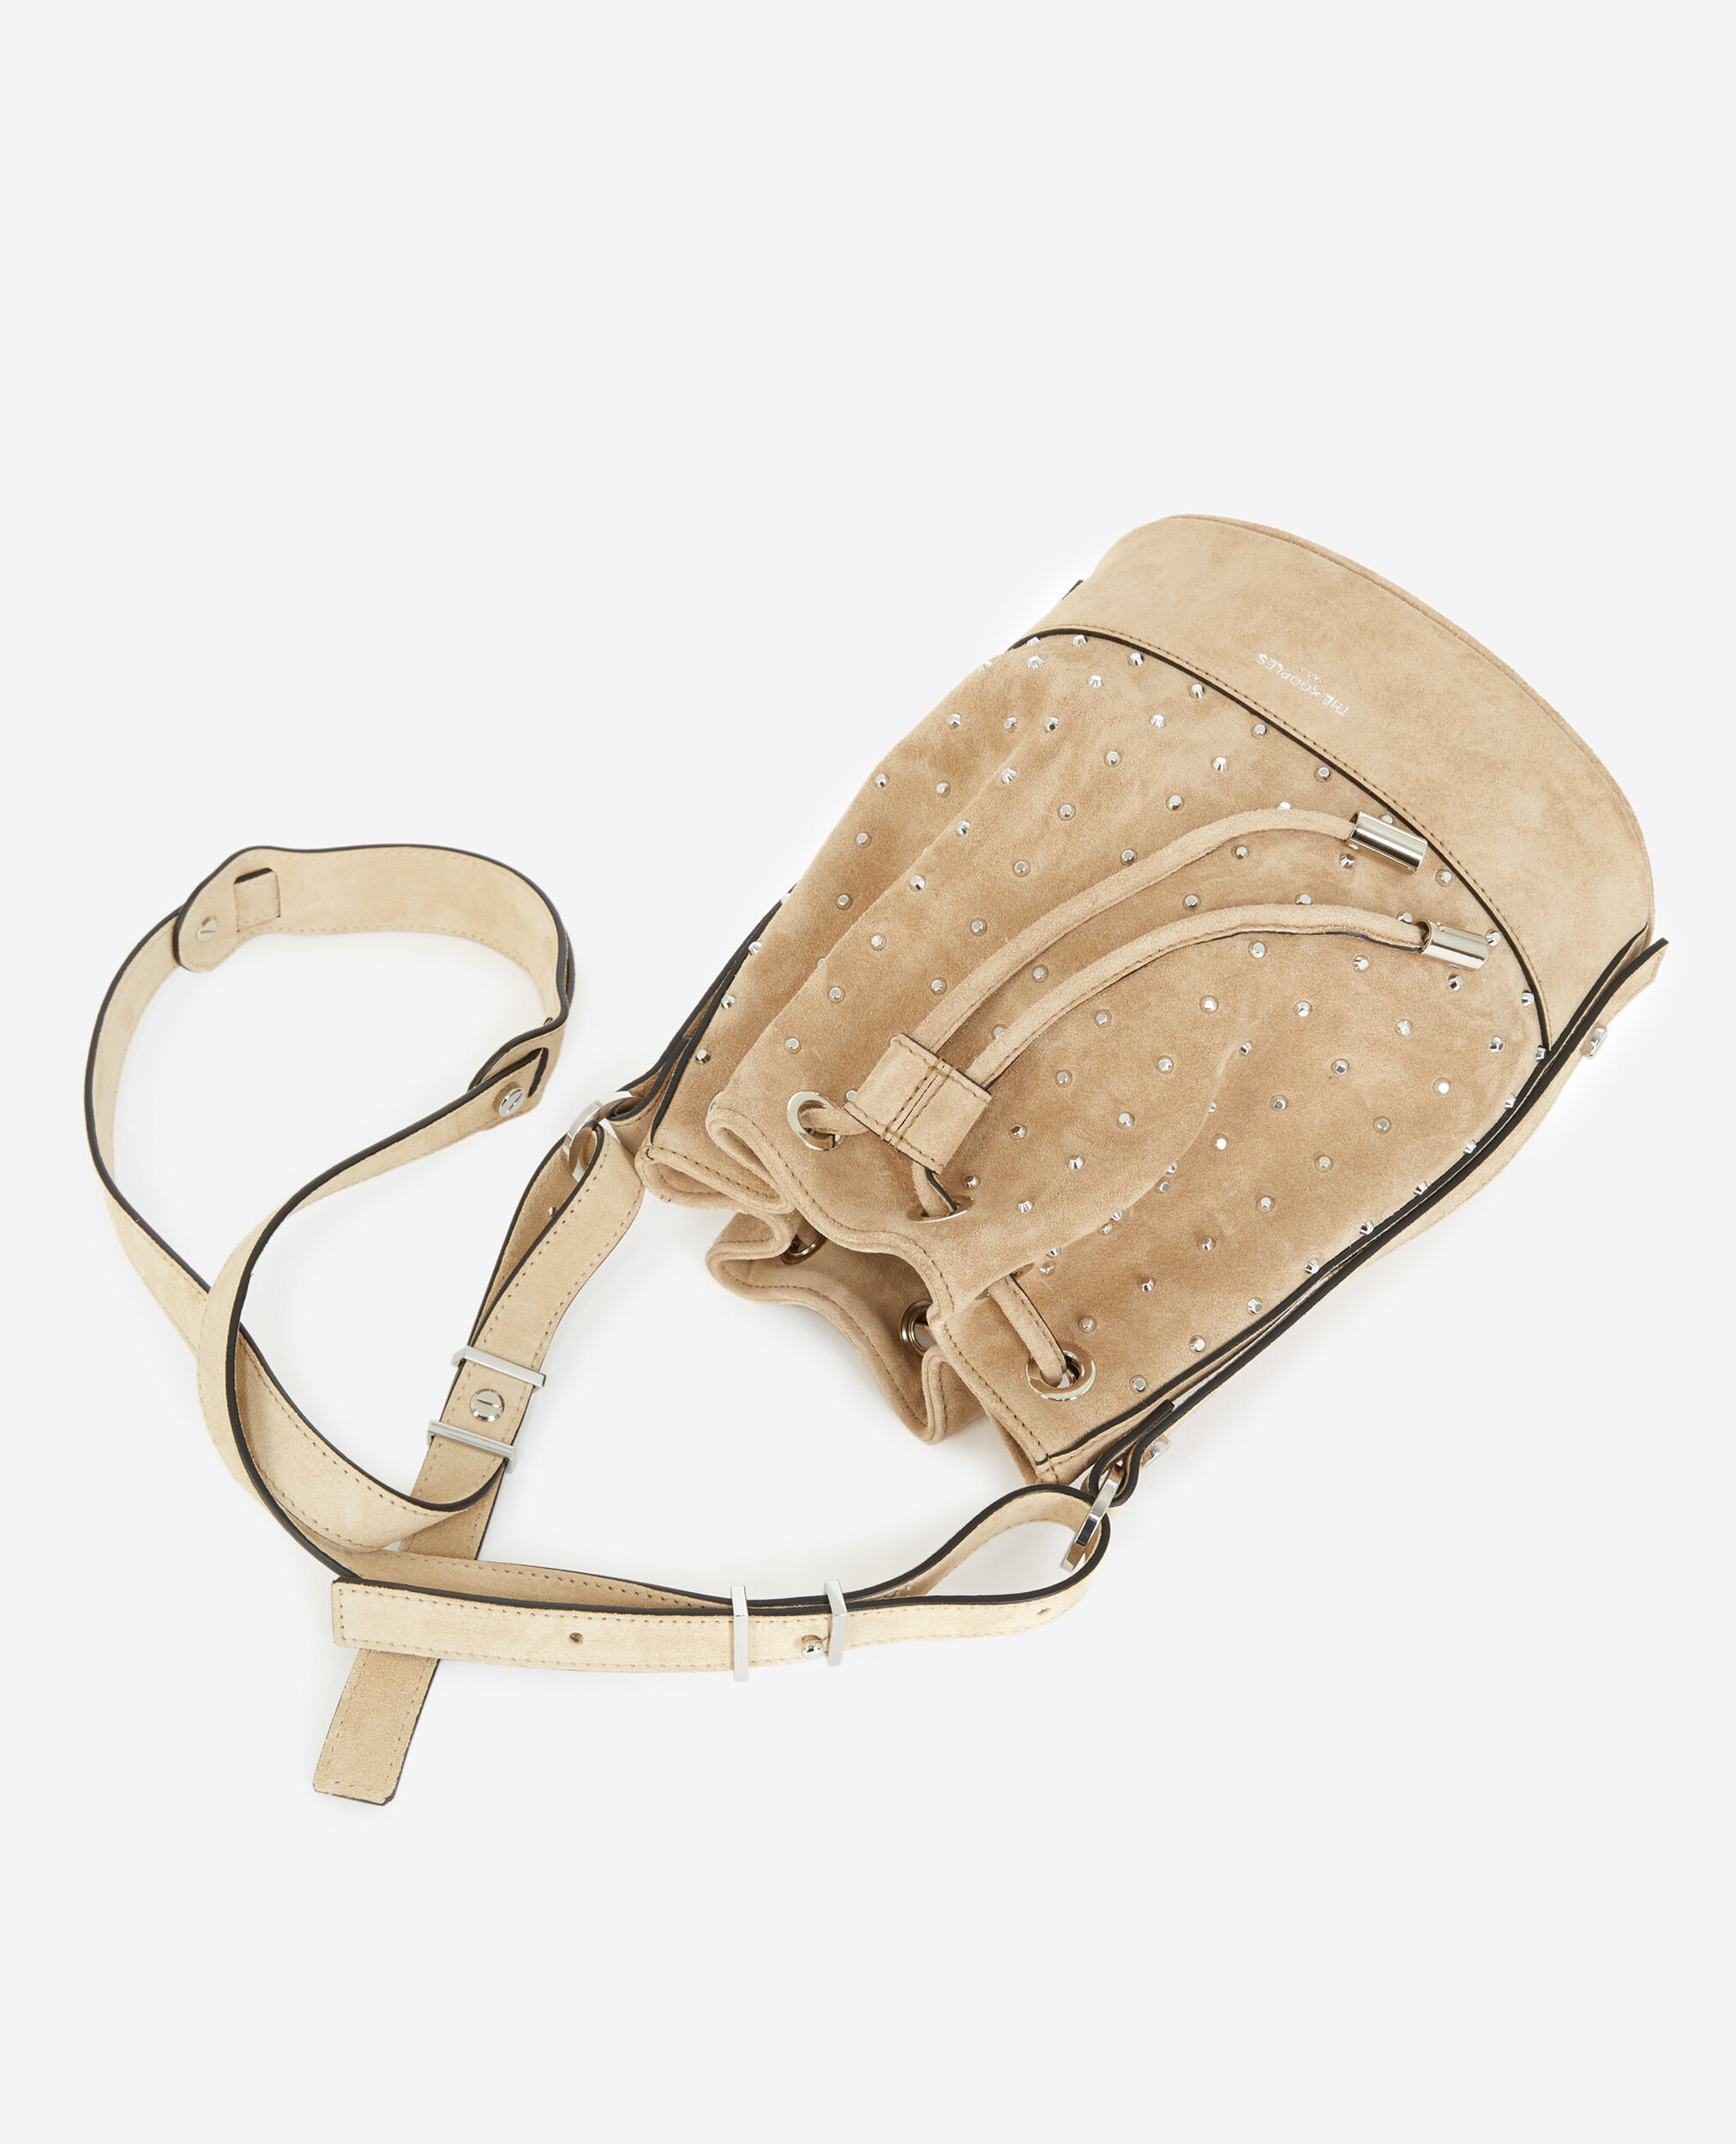 Studded Medium Tina bag in beige, BEIGE, hi-res image number null